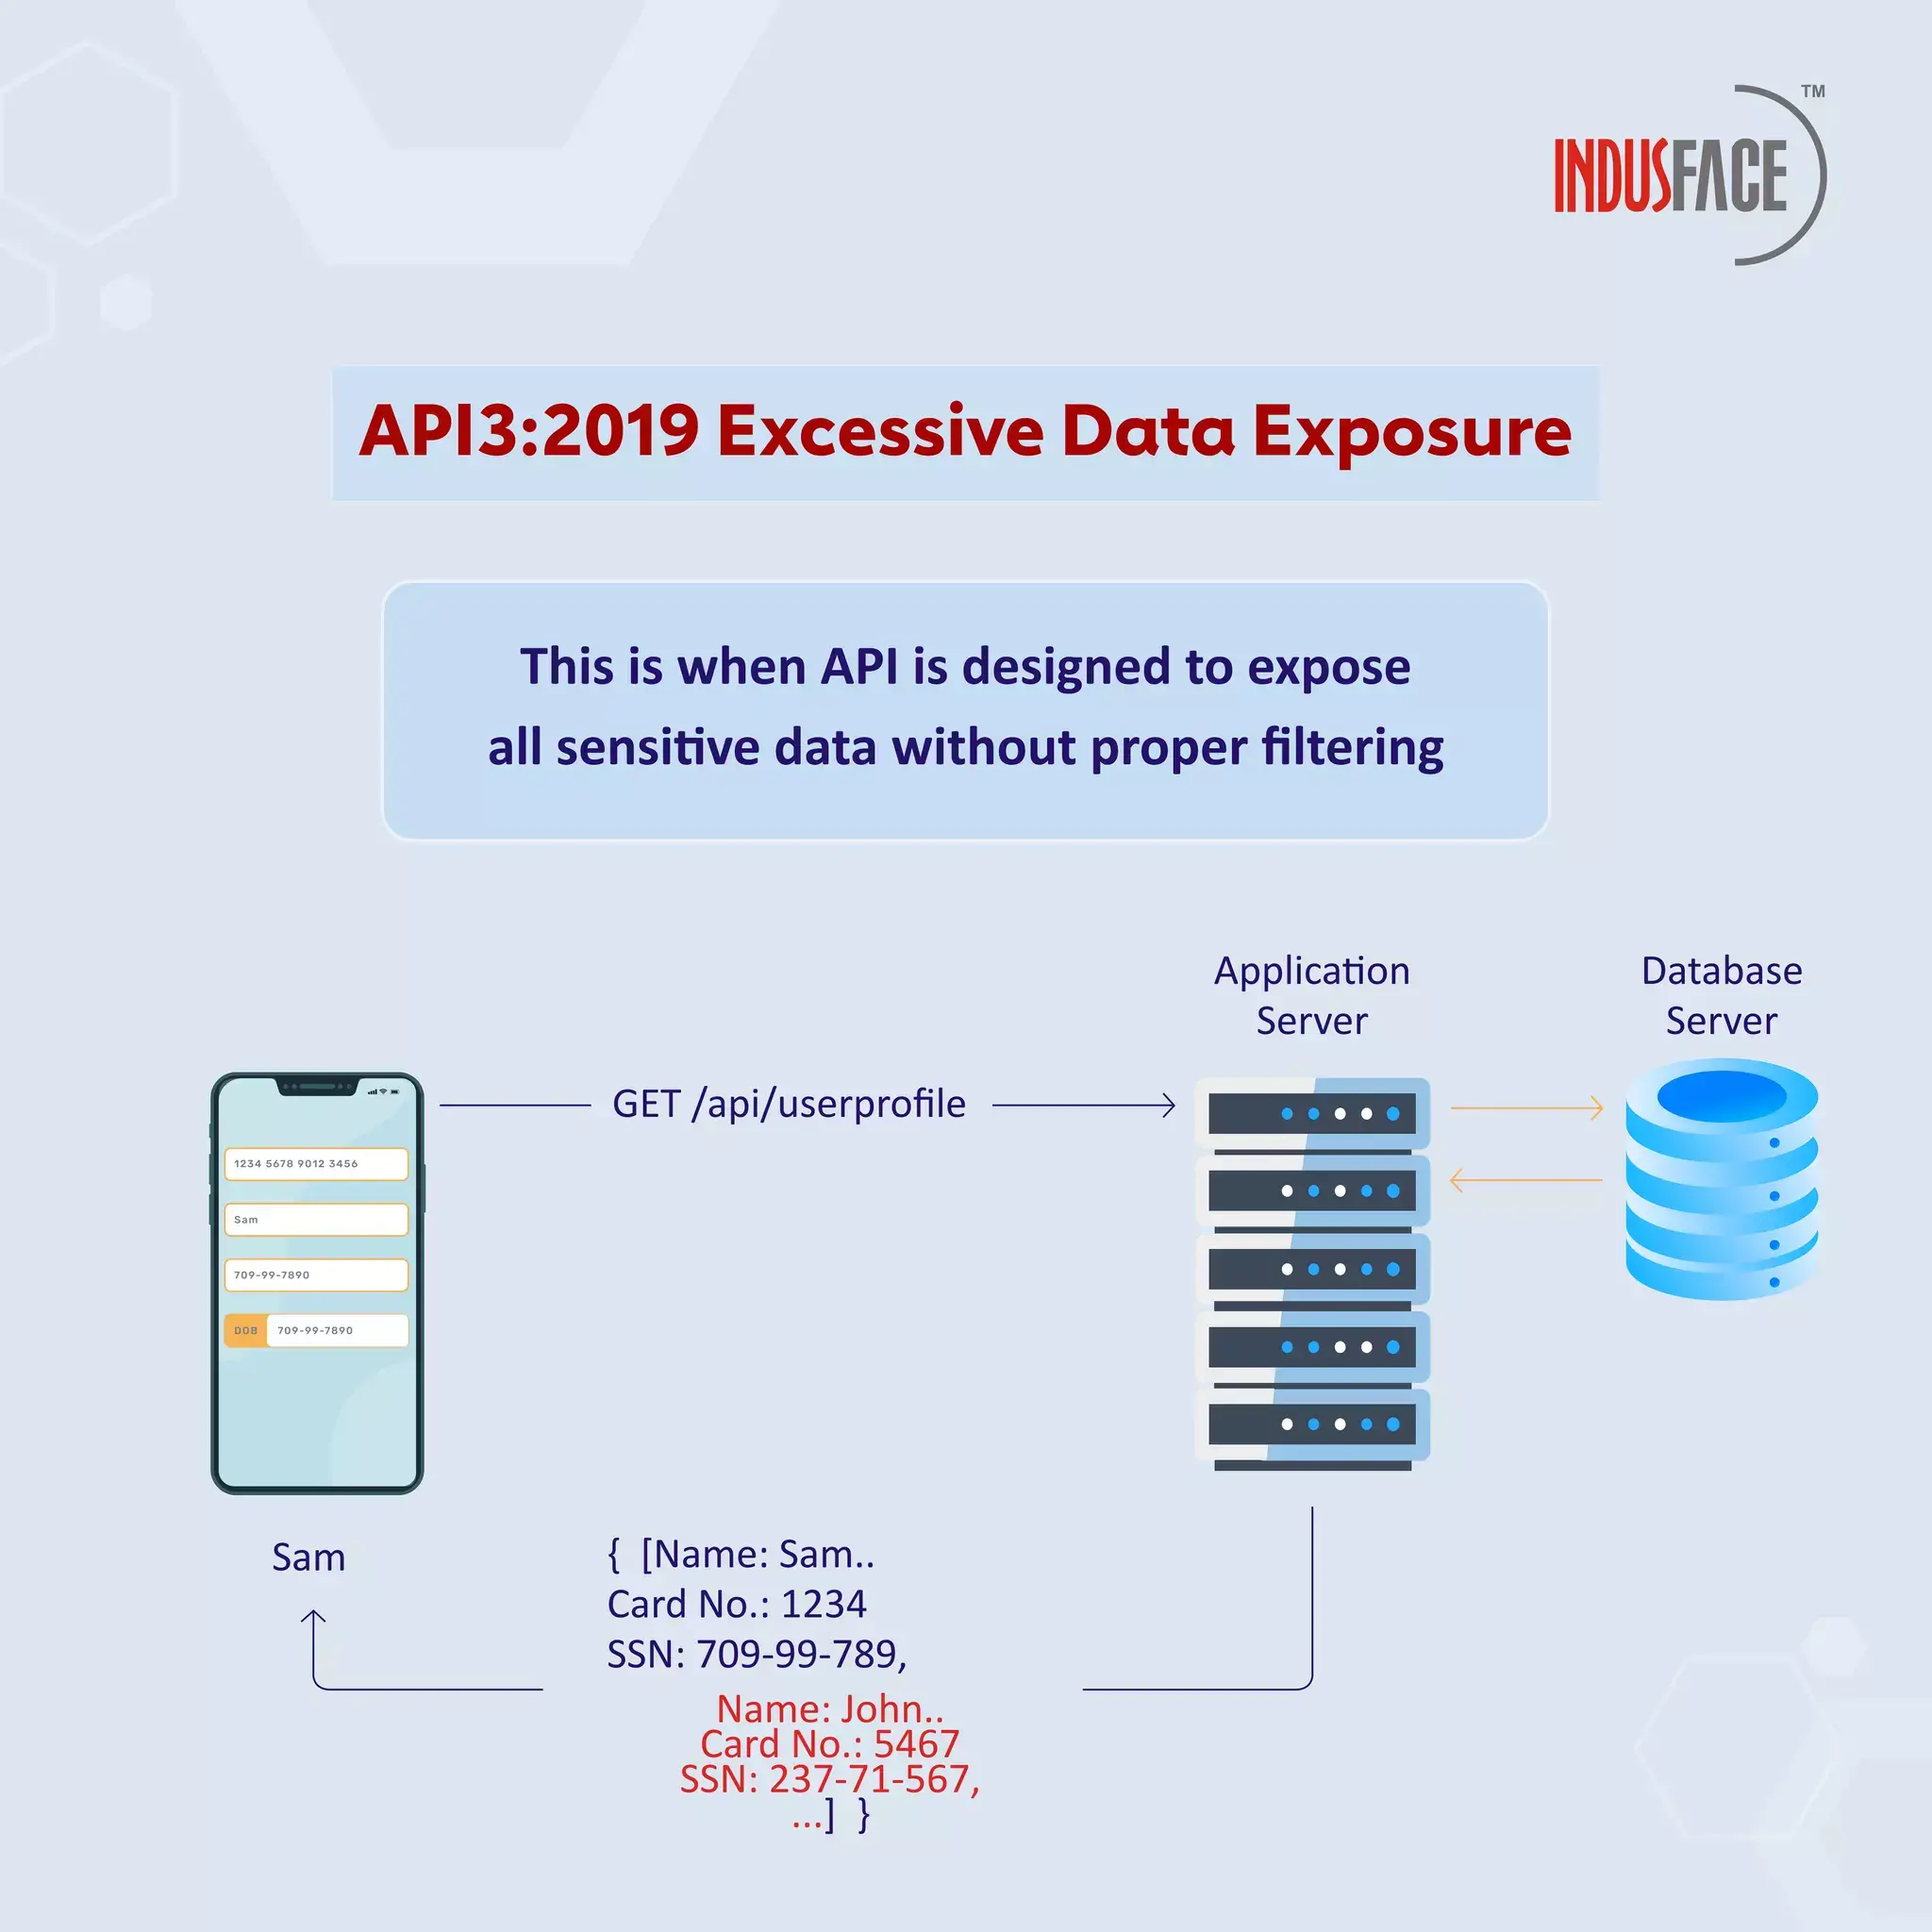 Excessive Data Exposure